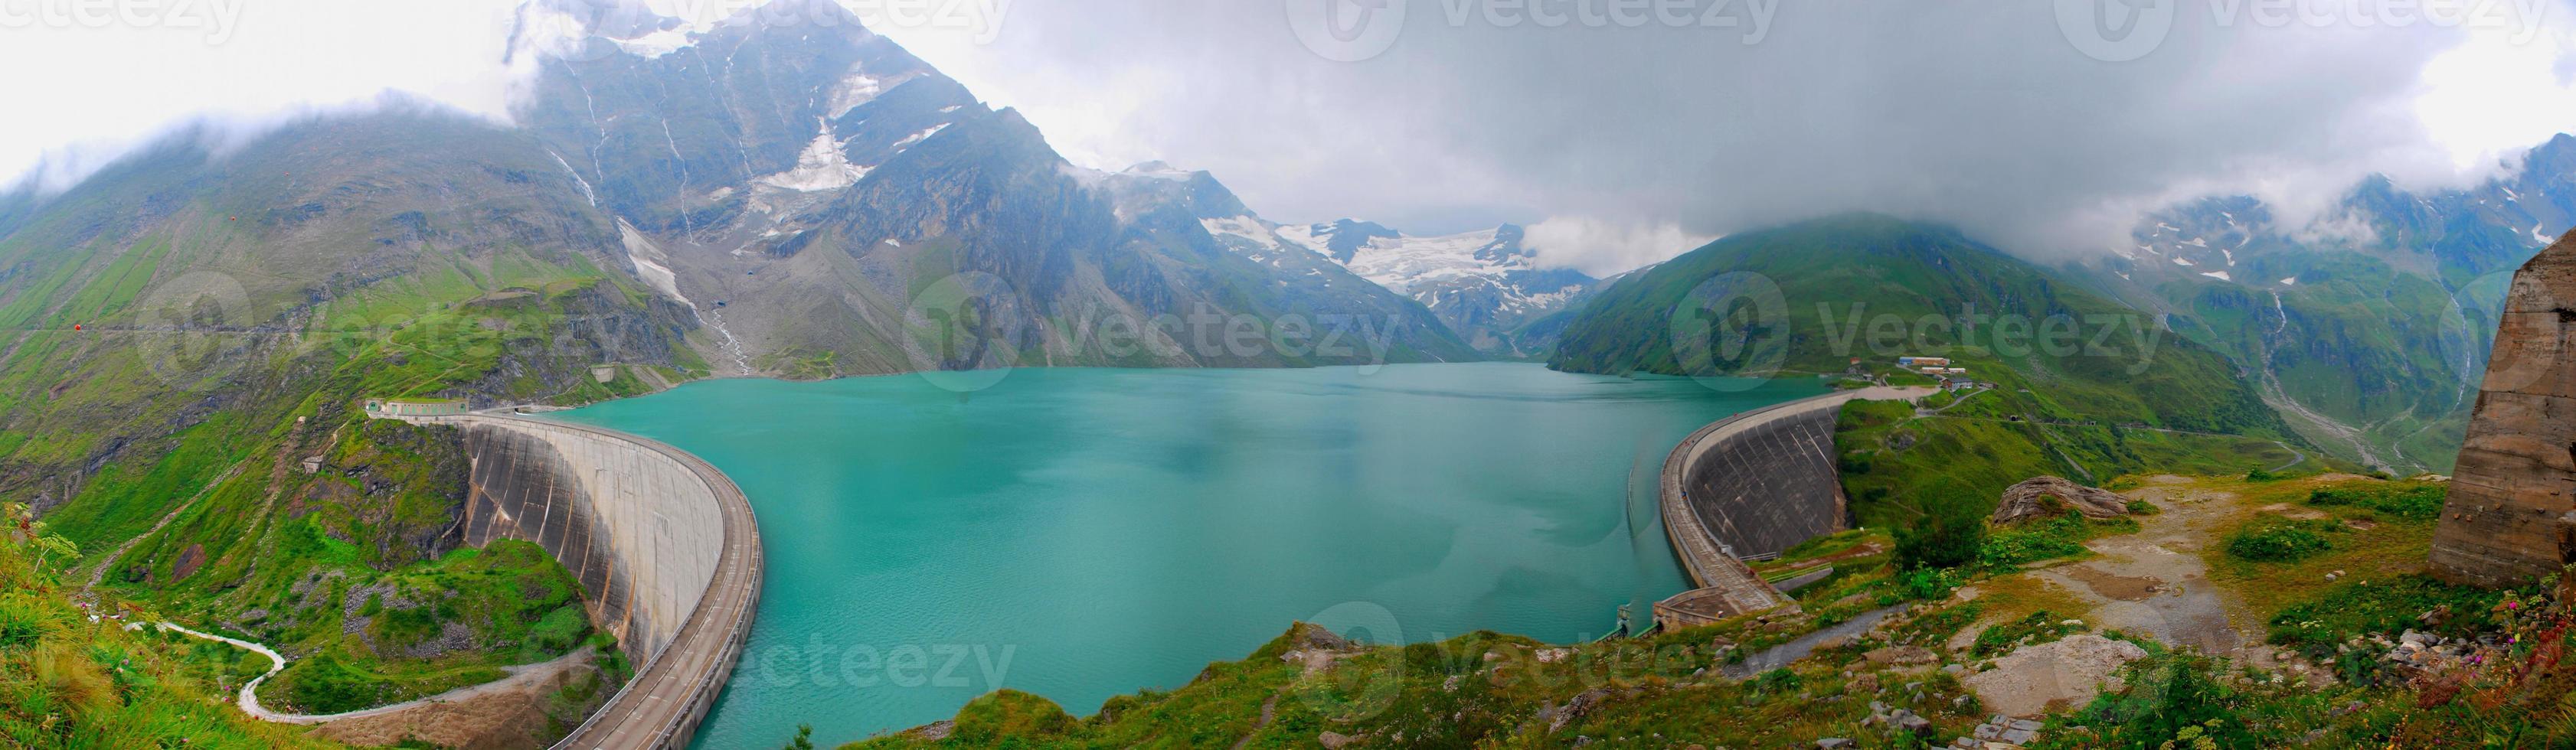 panorama du lac du barrage lors d'une randonnée photo